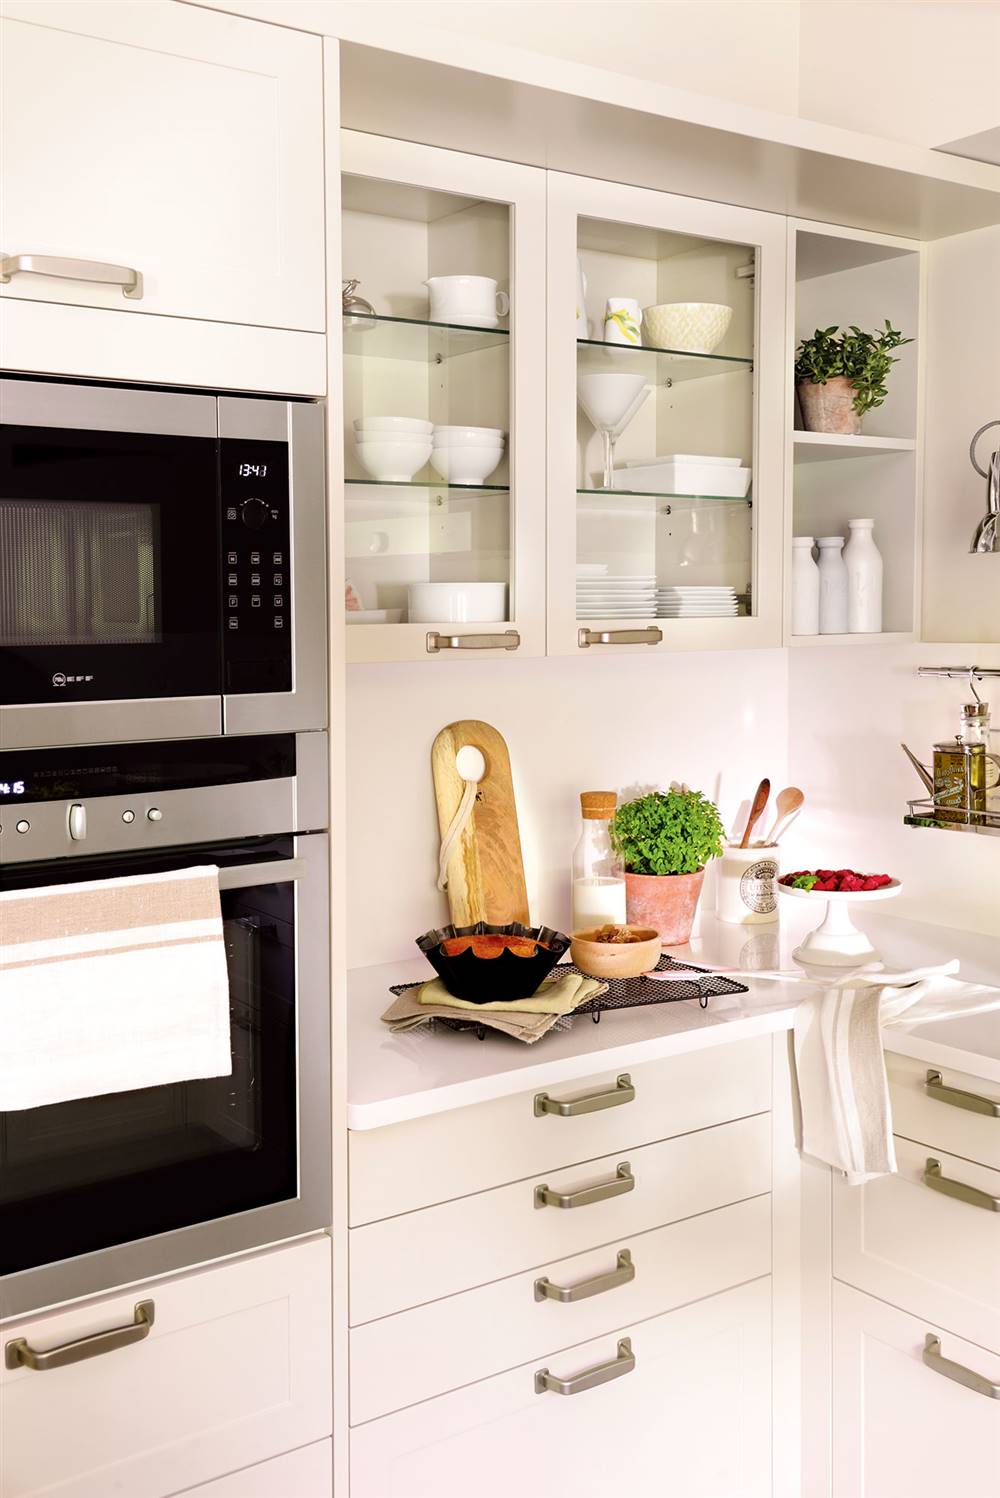 Semitoma cocina con muebles en blanco, cajones, vitrinas y horno y microondas en columna